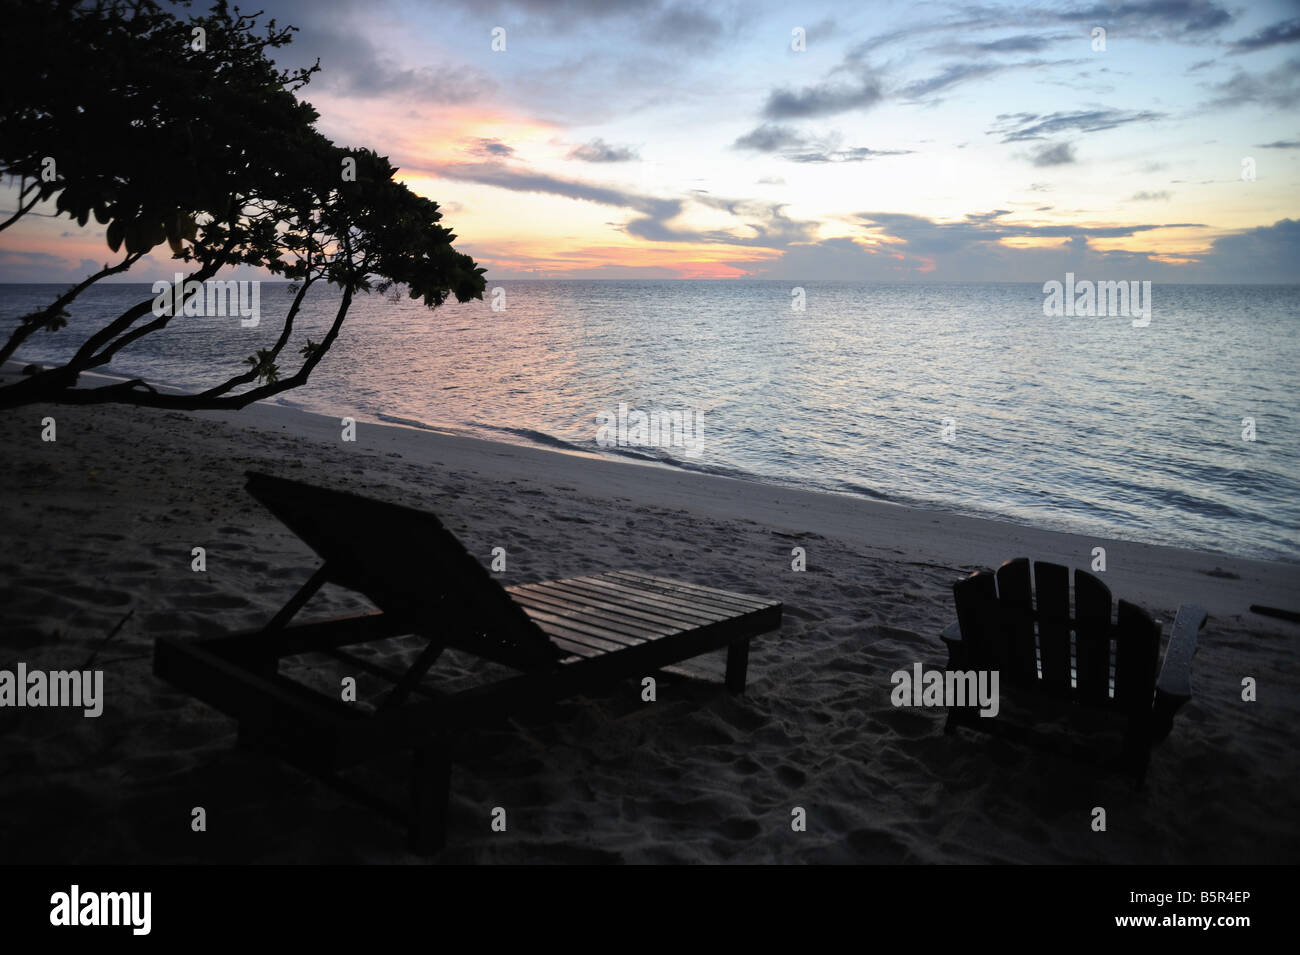 Plage des images de Lankayan Island Dive resort, paradis tropical dans la mer de Sulu Banque D'Images